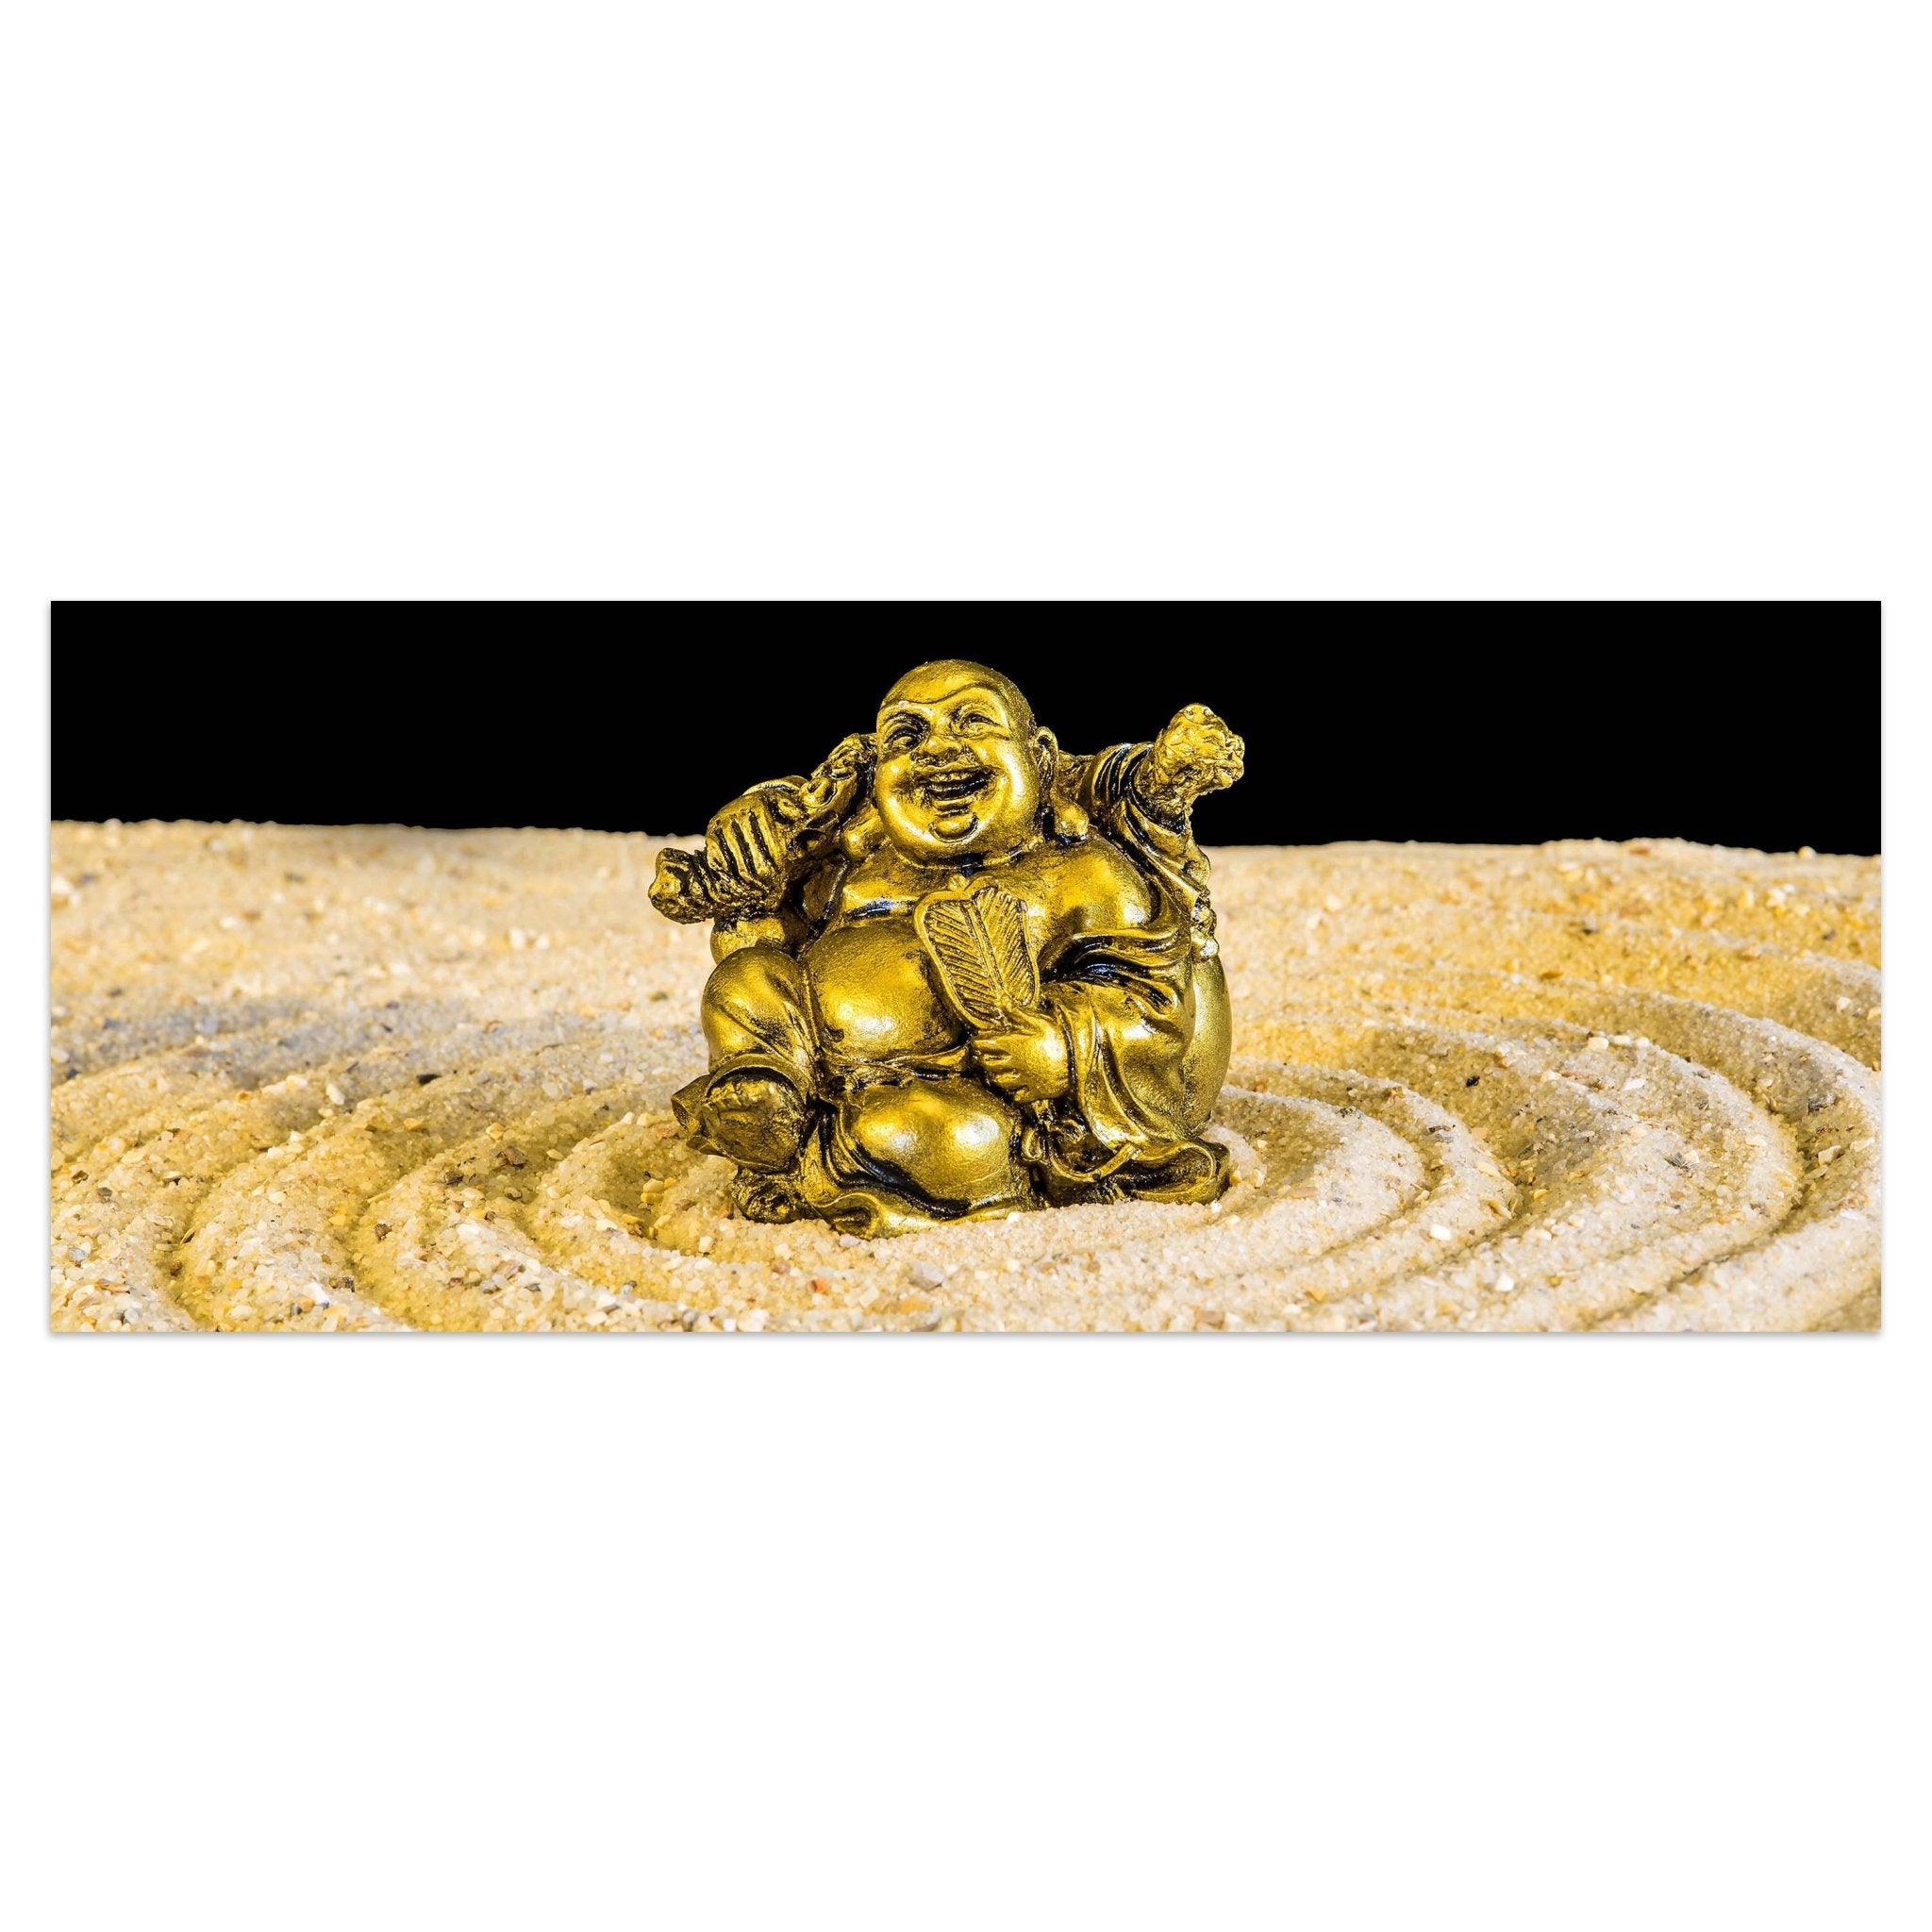 Leinwandbild Goldener Buddha im Zen-Kreis M0956 kaufen - Bild 1